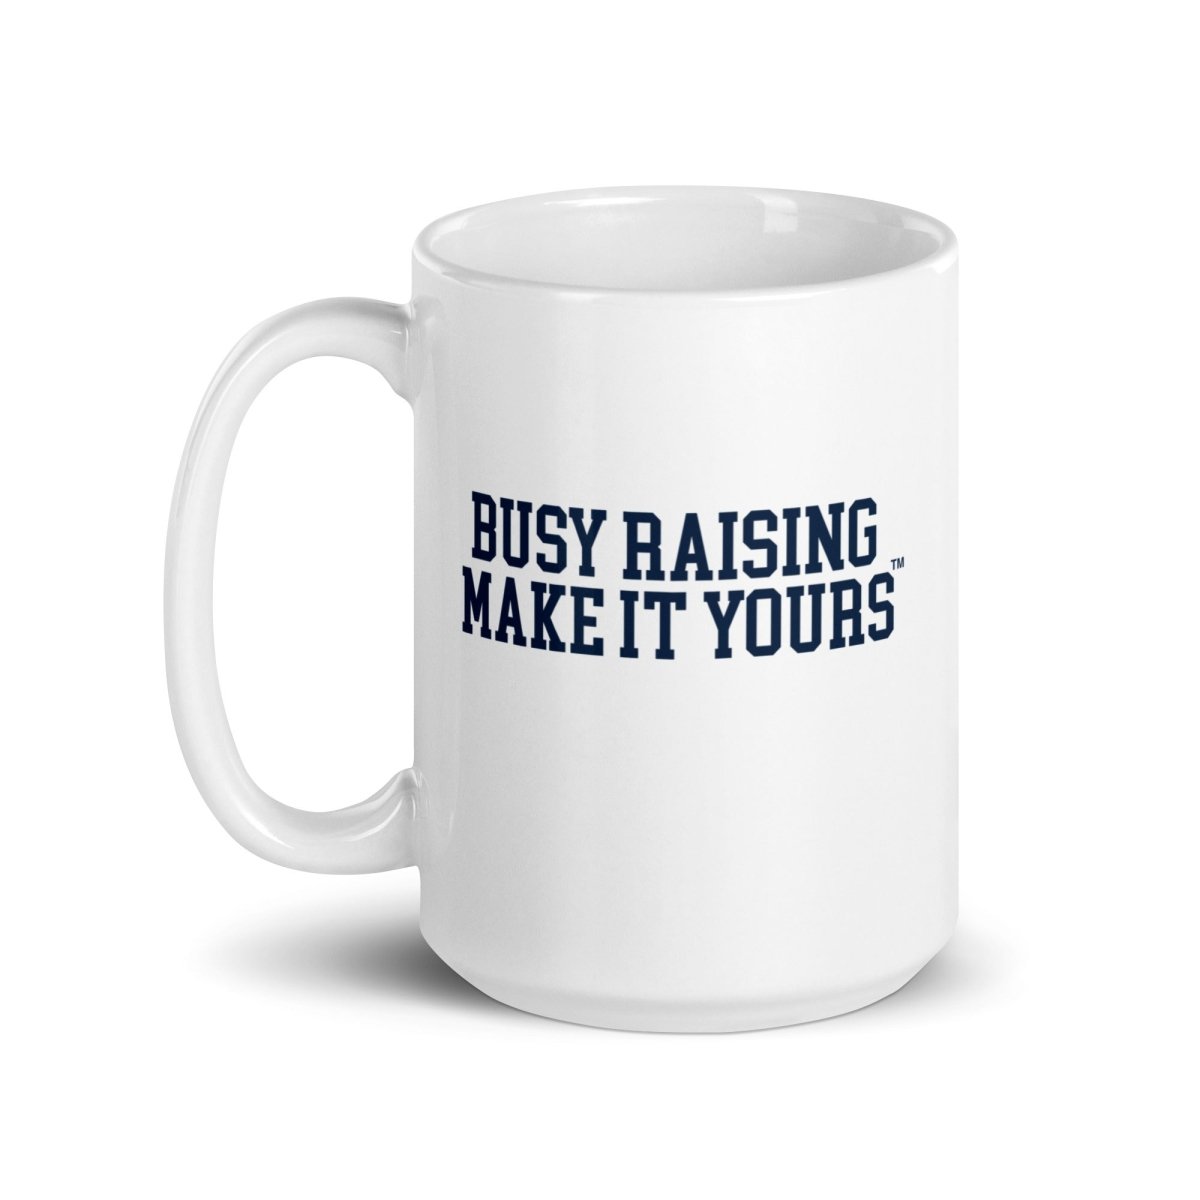 Make It Yours™ 'Busy Raising' Coffee Mug - United Monograms